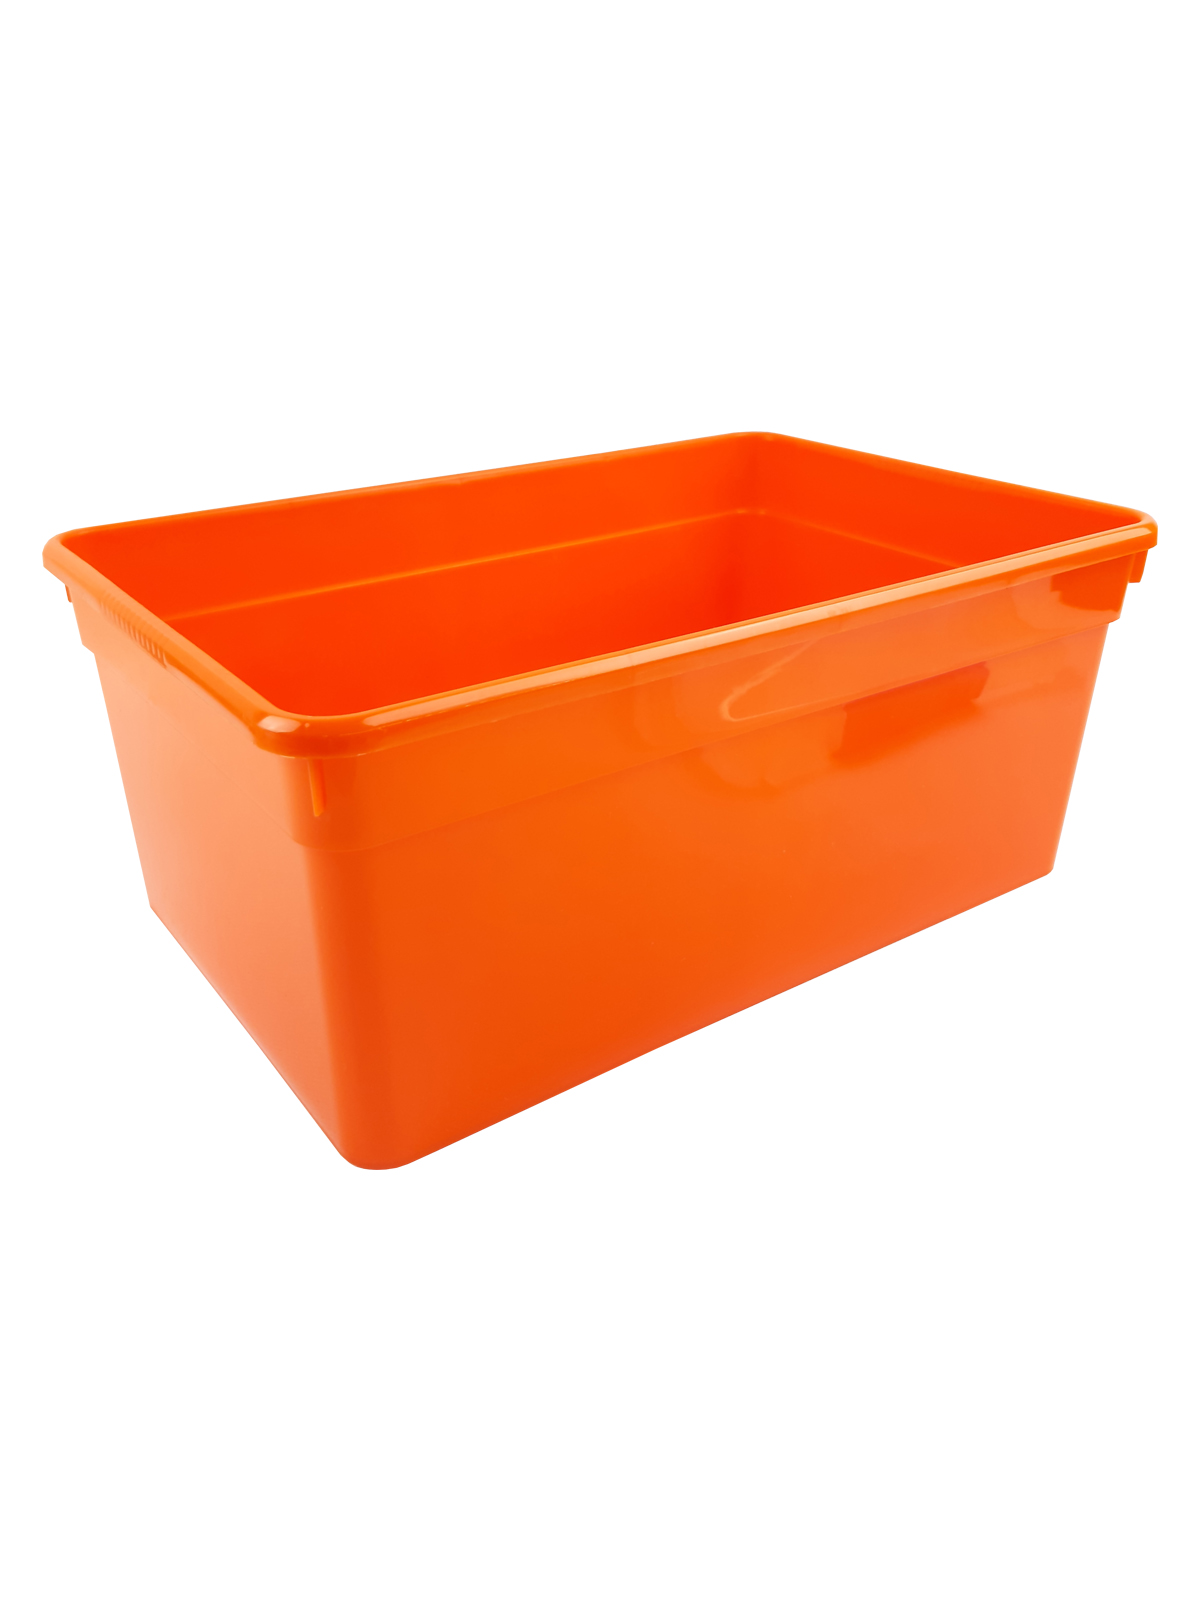 Ящик для хранения Kid's Box 3л салатовый, оранжевый